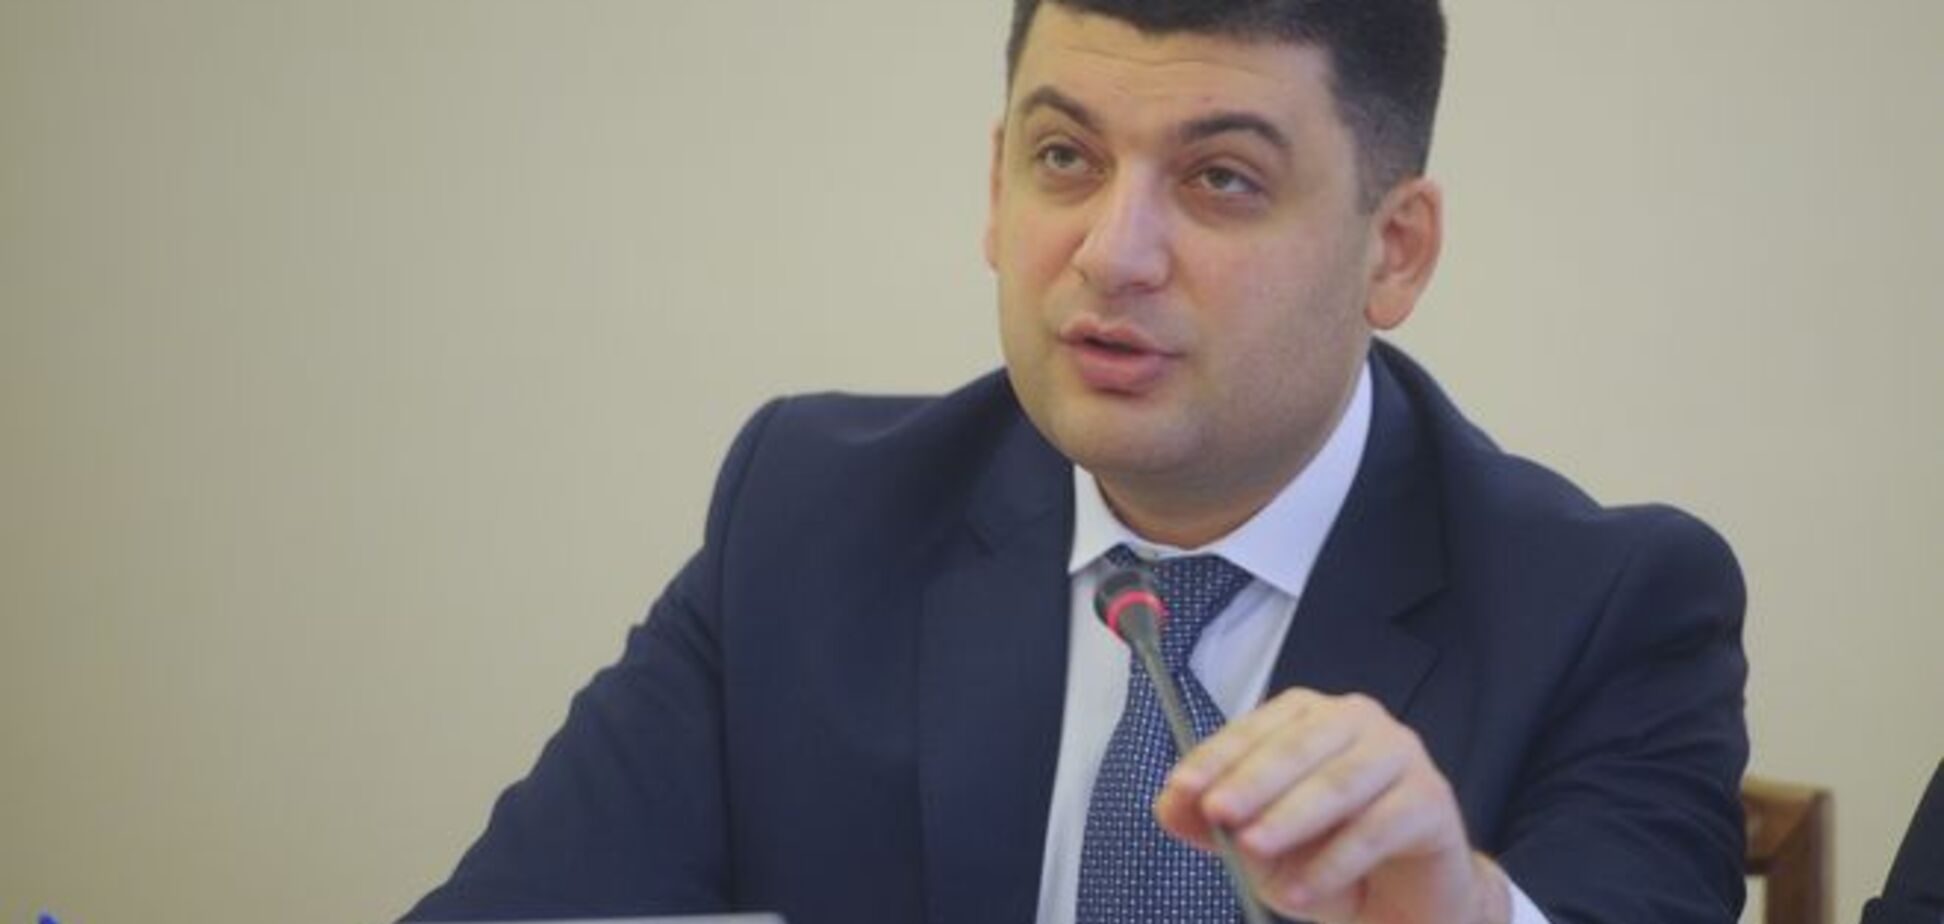 Новый закон не предусматривает 'особого статуса' Донбасса - Гройсман